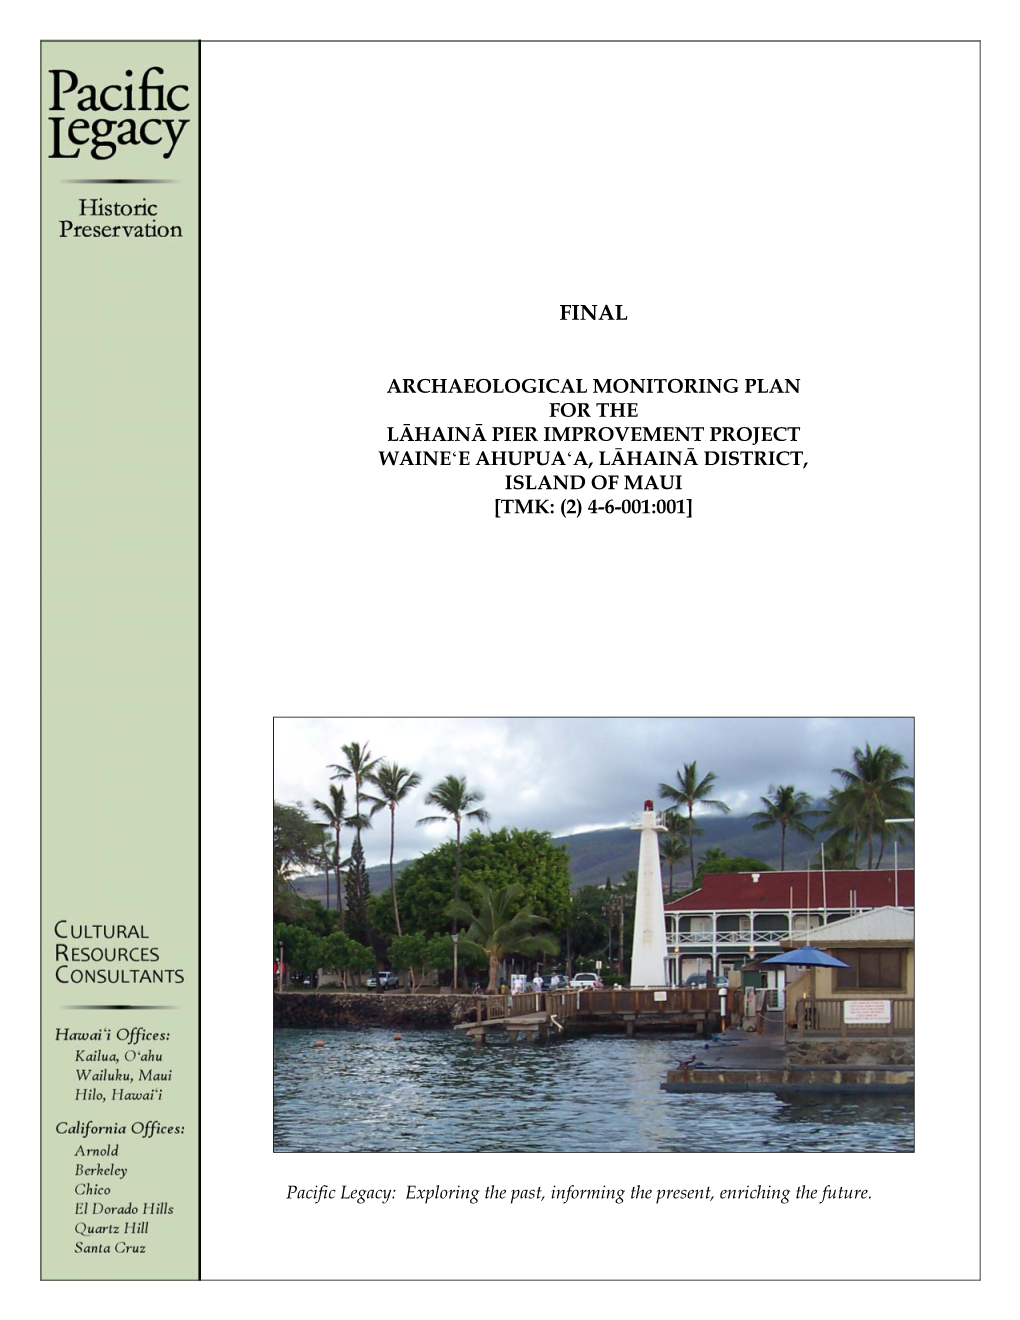 Archaeological Monitoring Plan for the Lāhainā Pier Improvement Project Waine‘E Ahupua‘A, Lāhainā District, Island of Maui